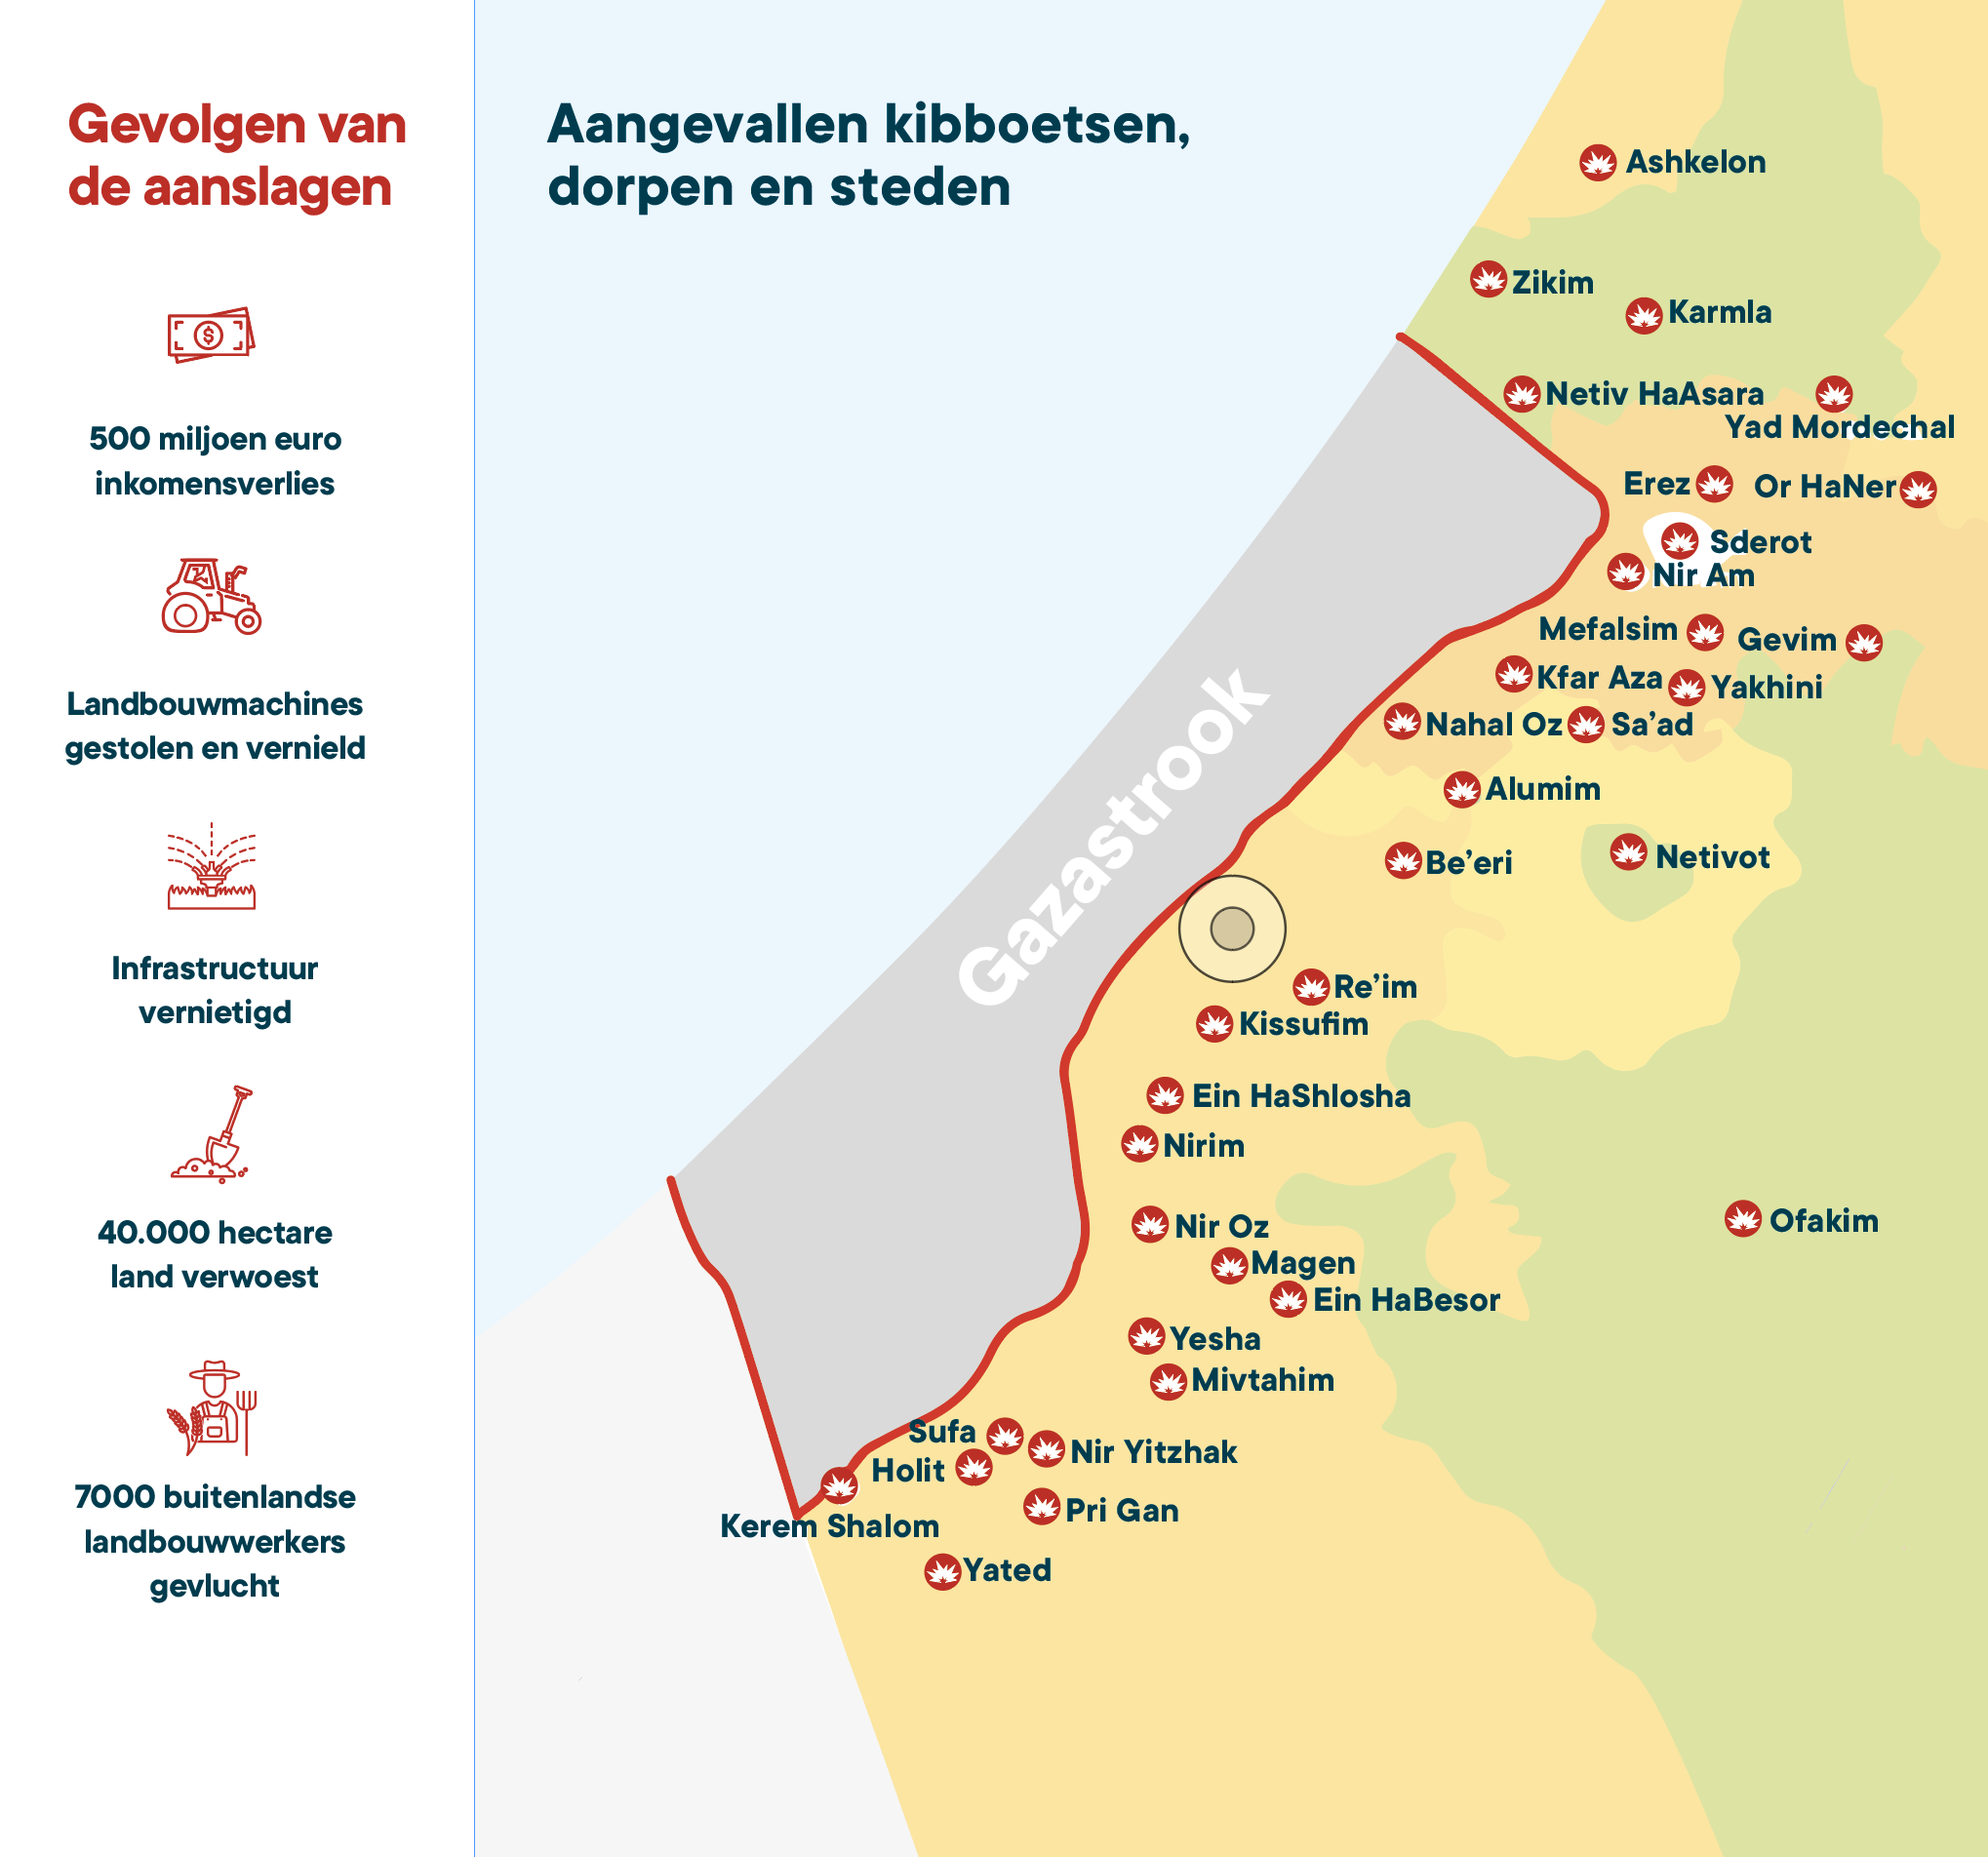 Kaart aangevallen kibboetsen, dorpen en steden en de gevolgen van de aanslagen - Samen sterk